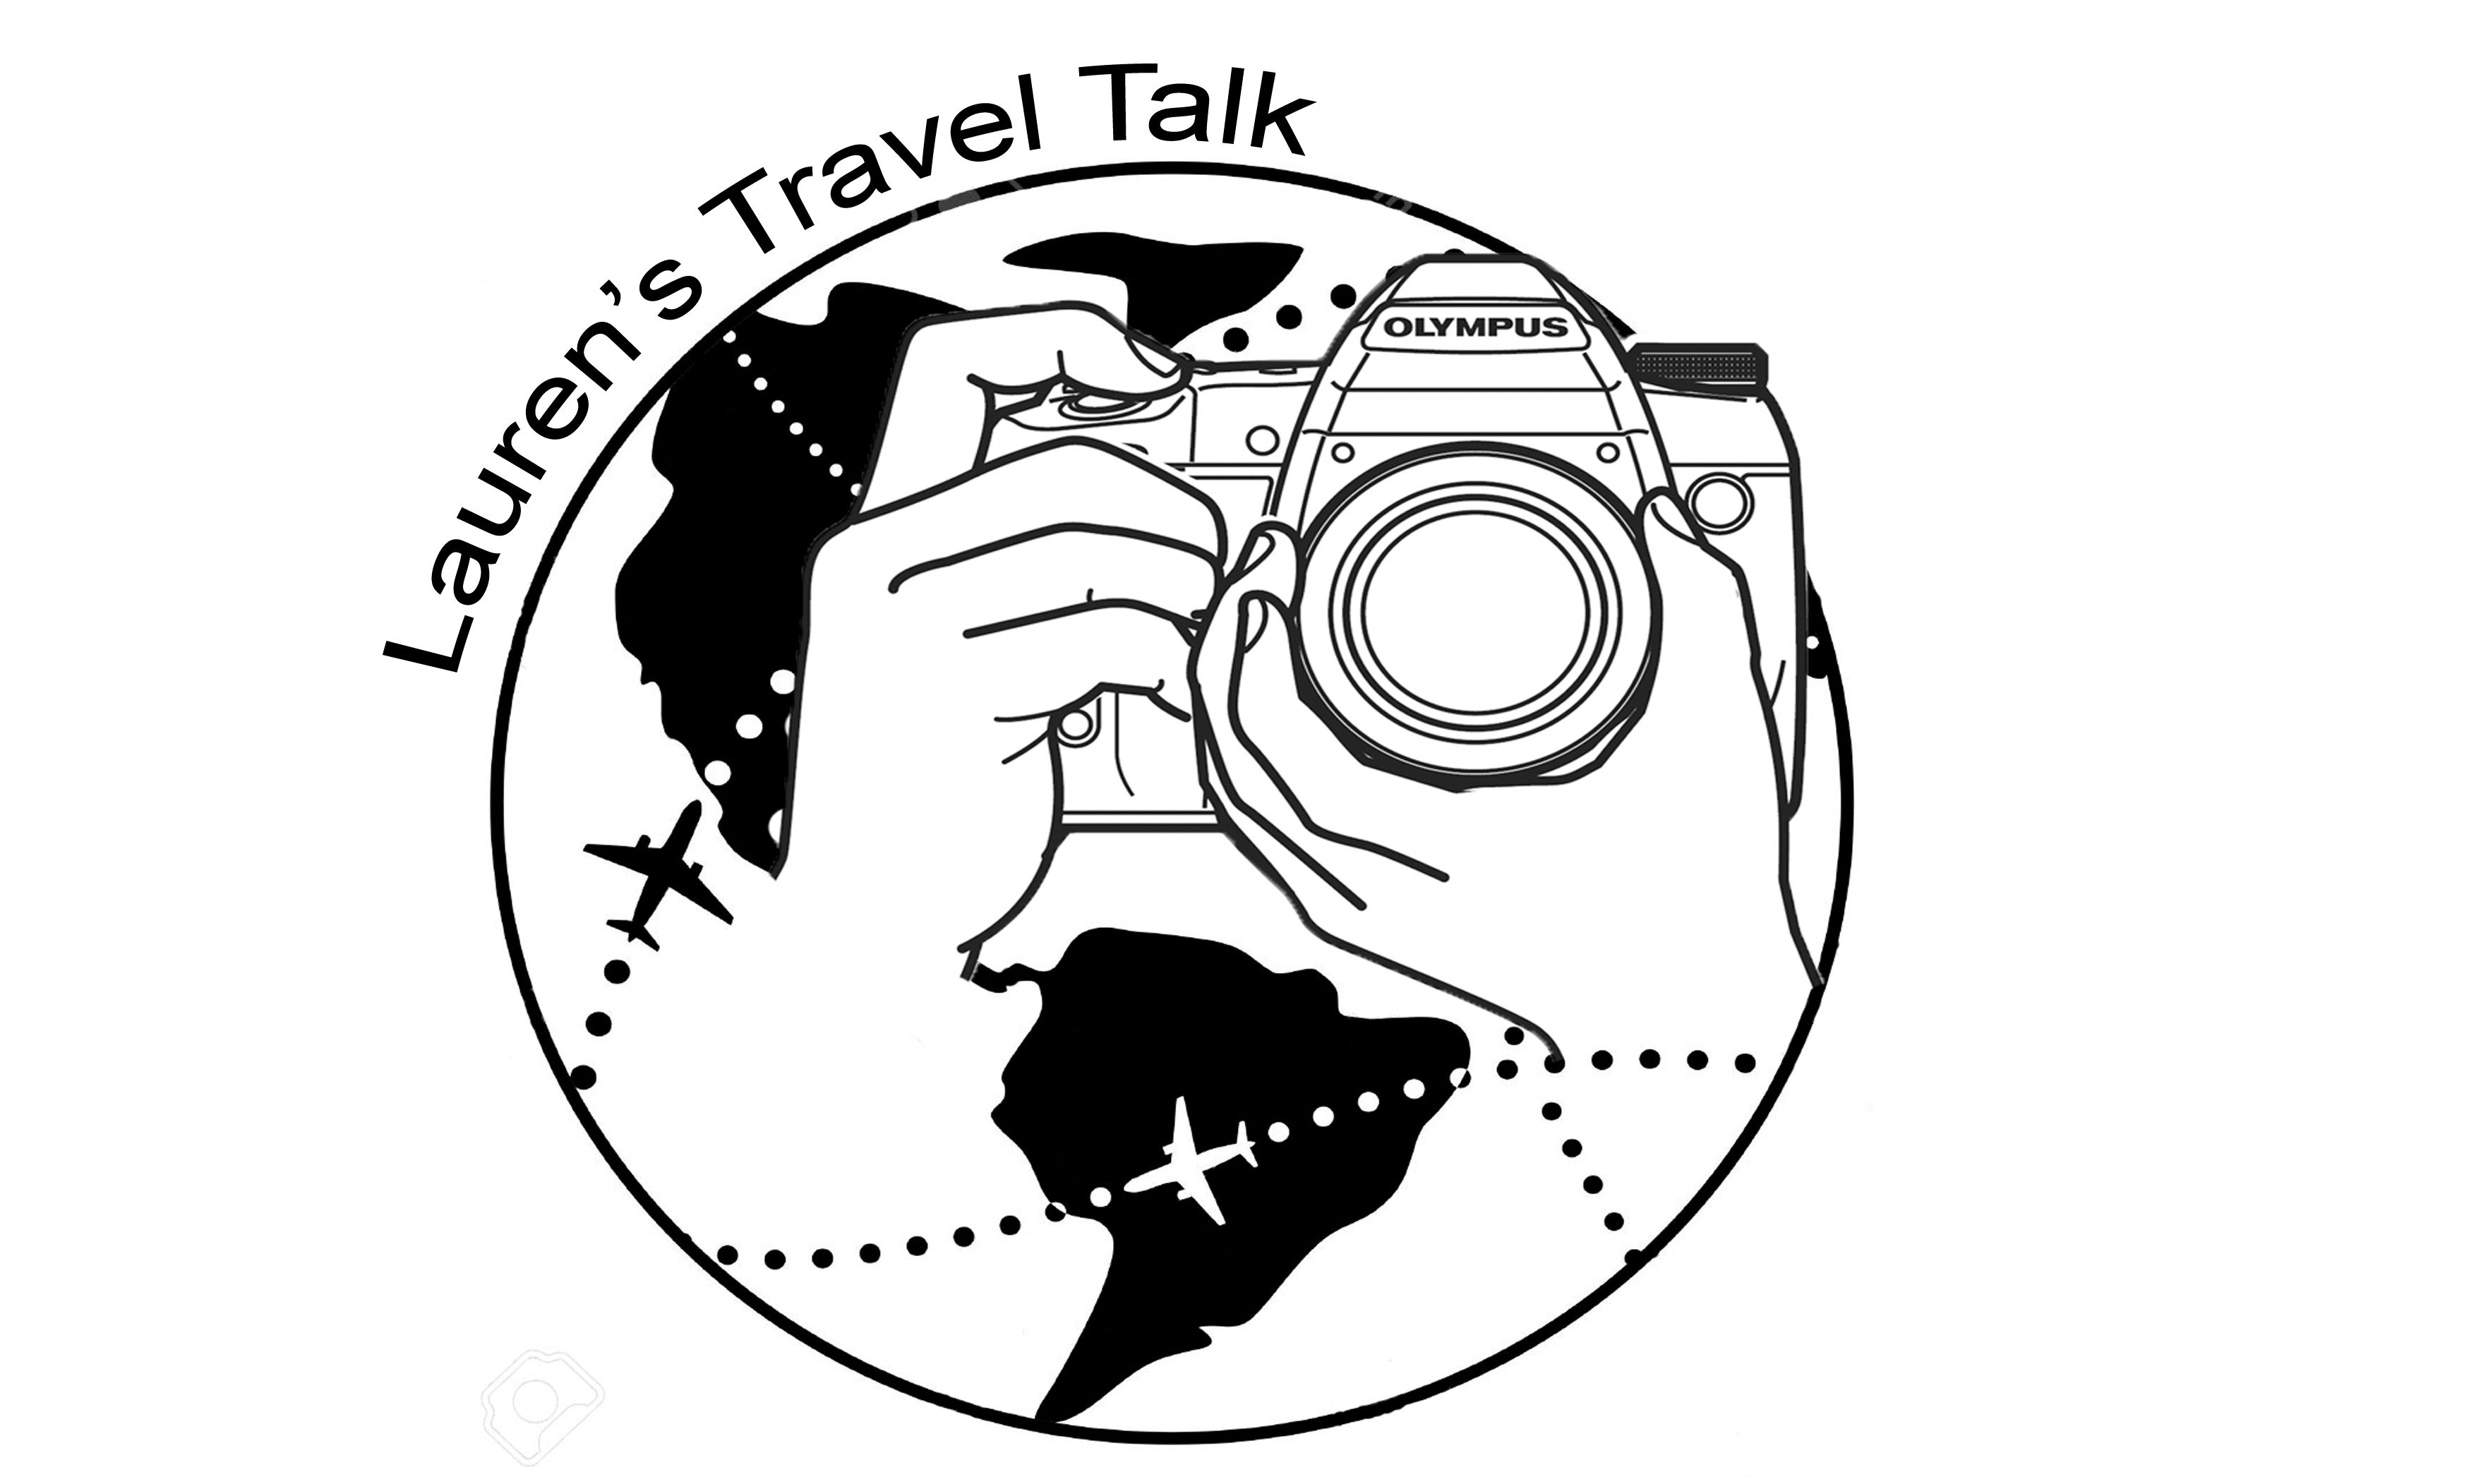 Lauren's Travel Talk